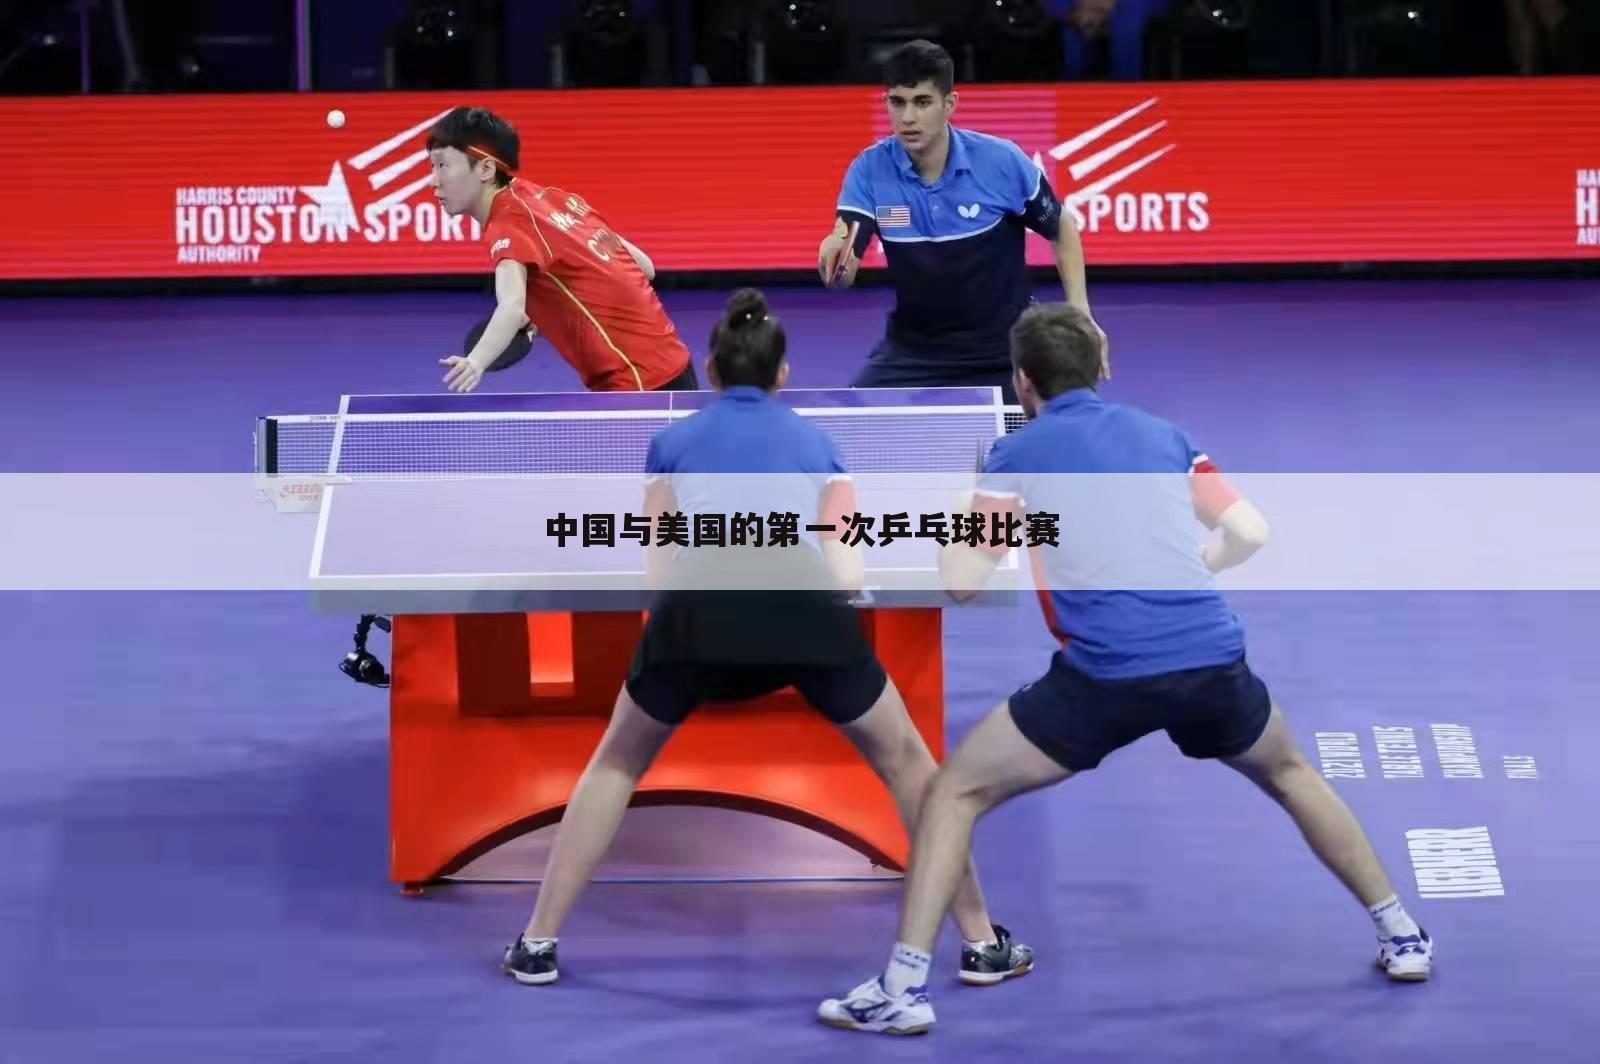 中国与美国的第一次乒乓球比赛